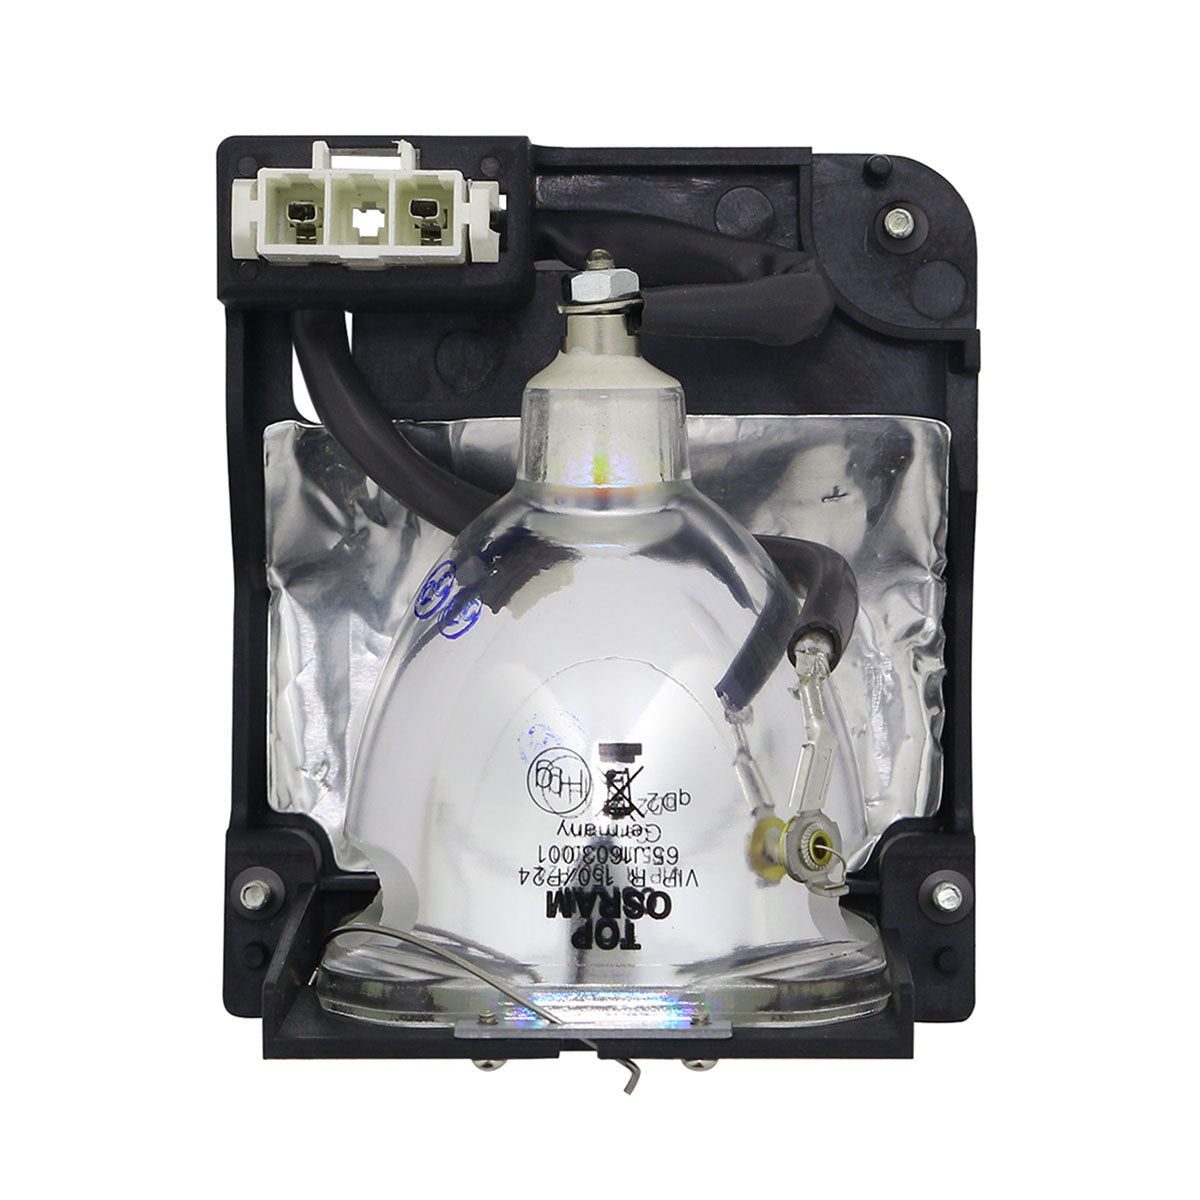 PLUS 28-640 Osram Projector Lamp Module